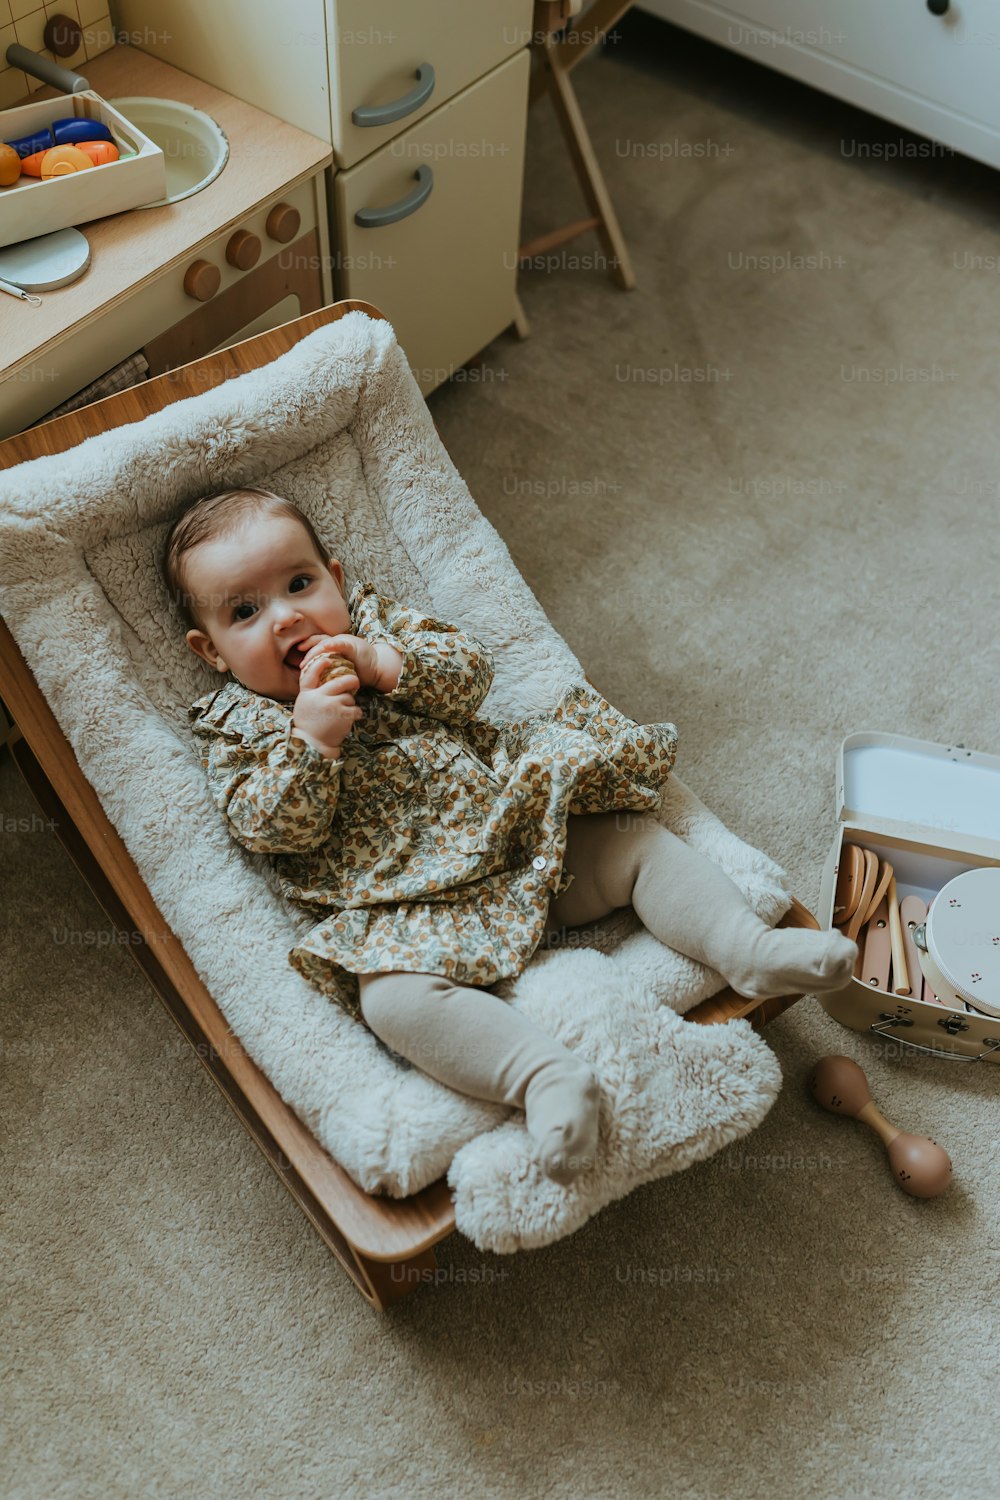 Un bebé en una mecedora con un libro en el suelo